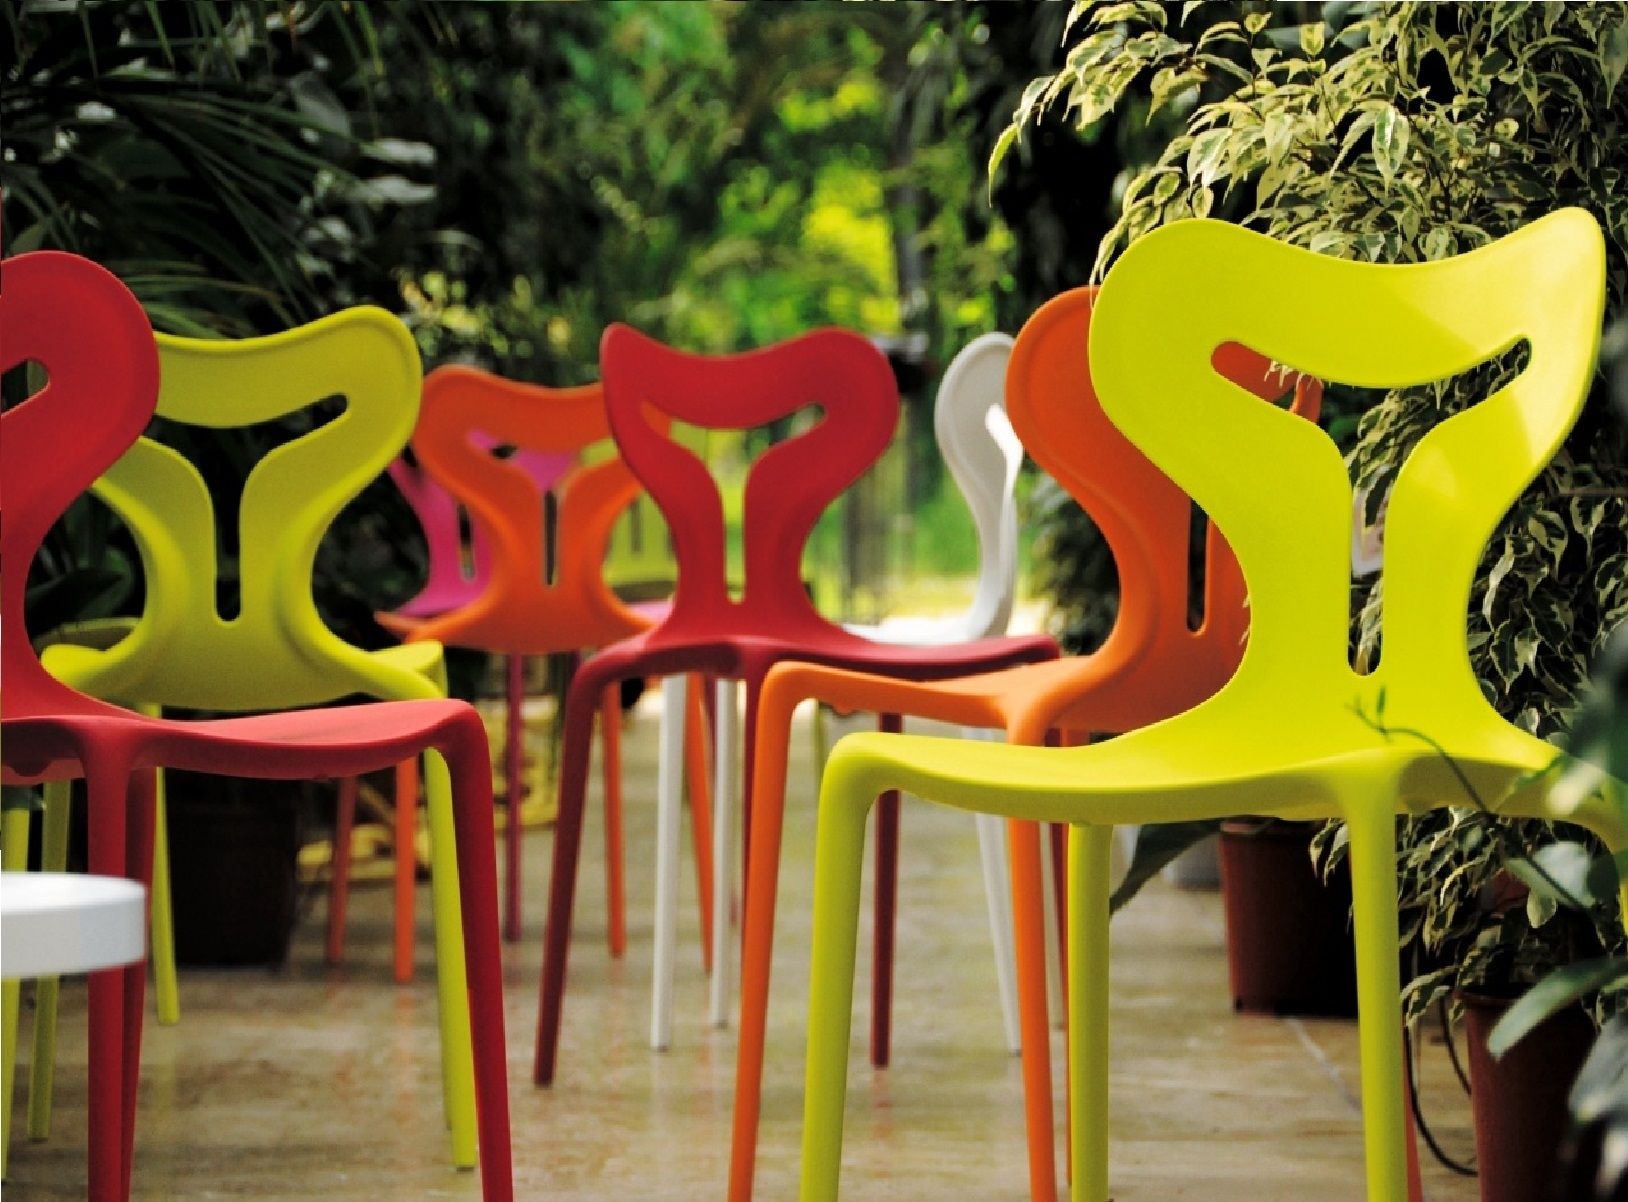 Outdoor plastic furniture